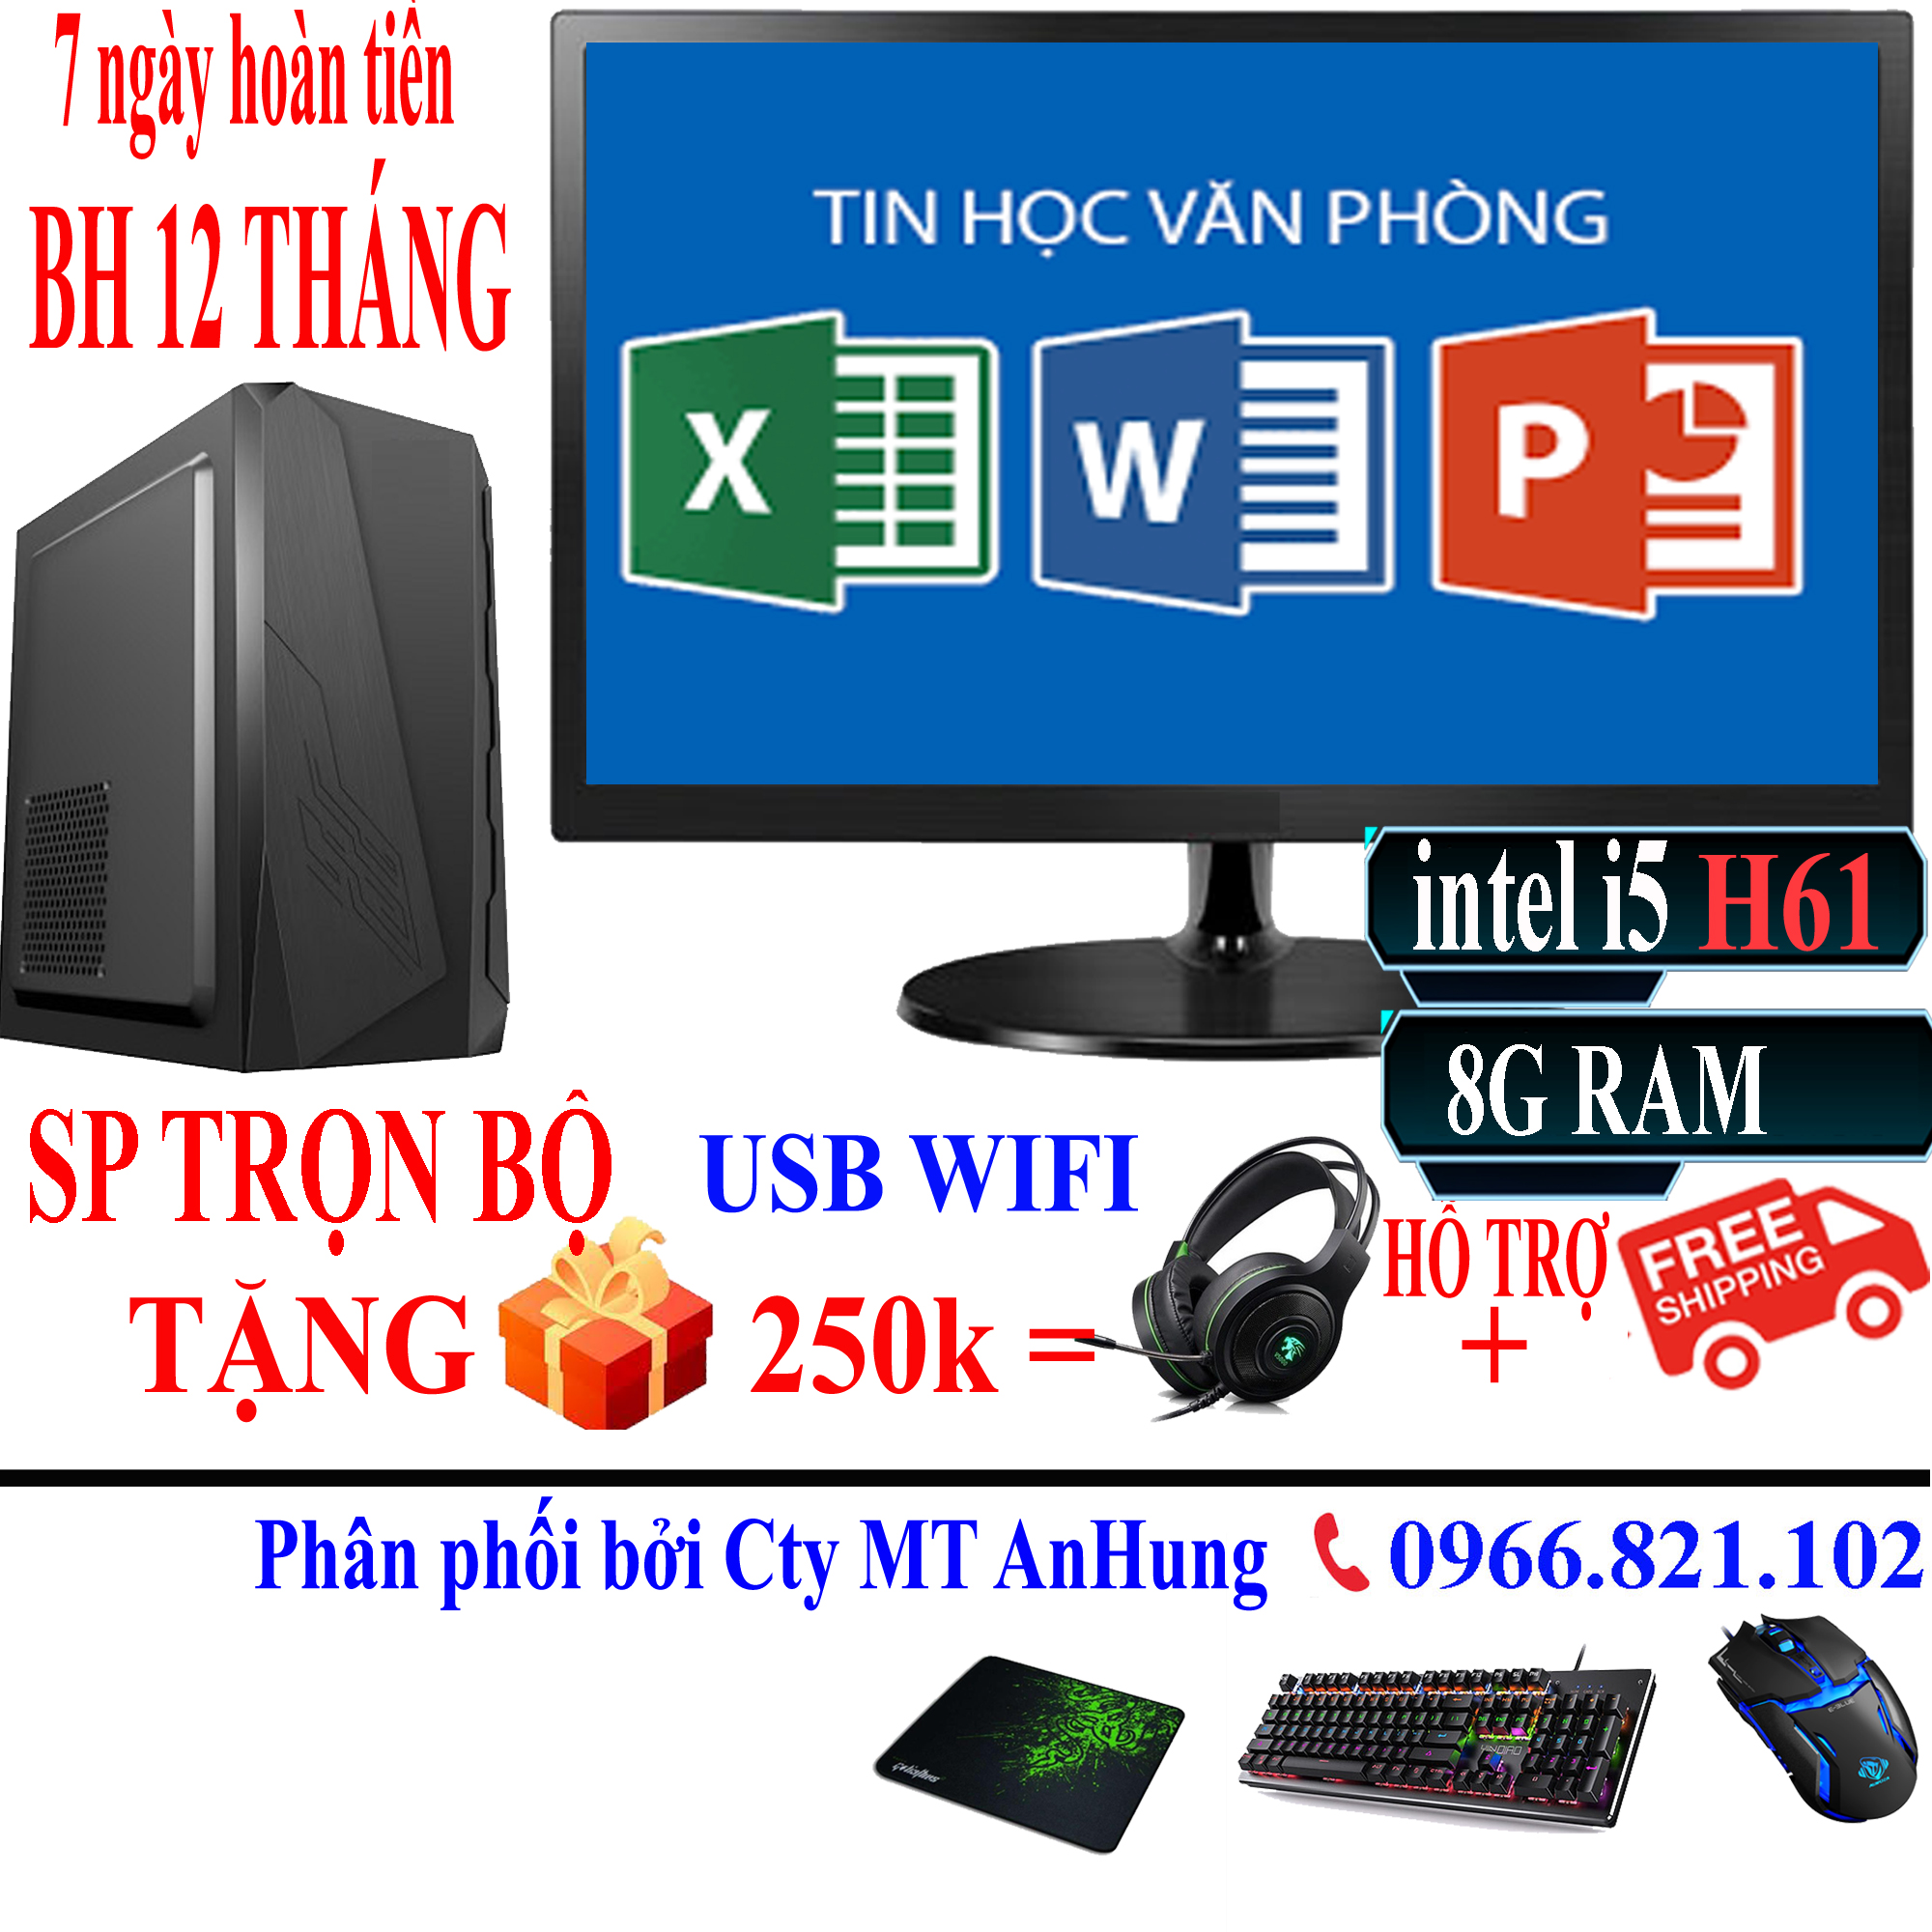 Bộ máy tính để bàn VLimited cao cấp i5 3330/8G/ SSD/HDD/ Văn Phòng, GAME sản phẩm trọn bộ - Hàng chính hãng